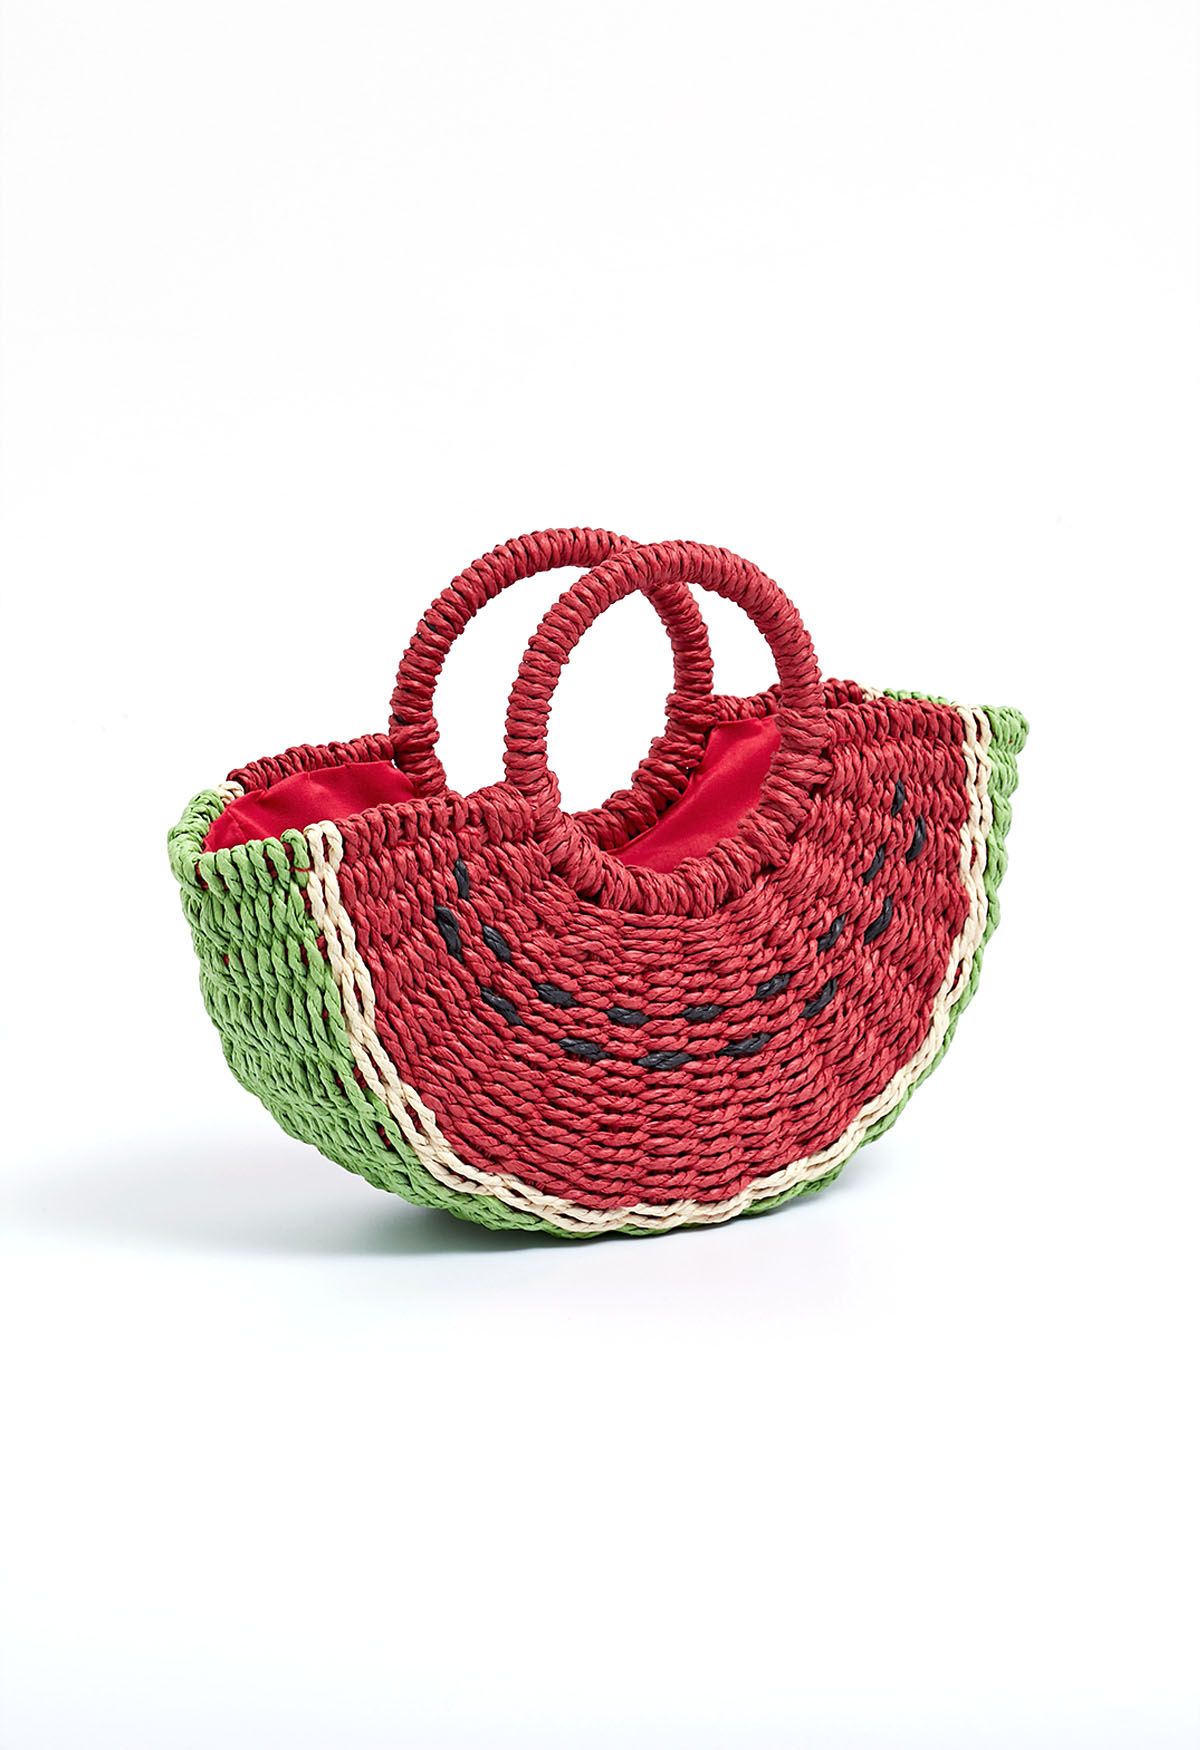 Handtasche aus gewebtem Stroh mit Wassermelonen-Motiv